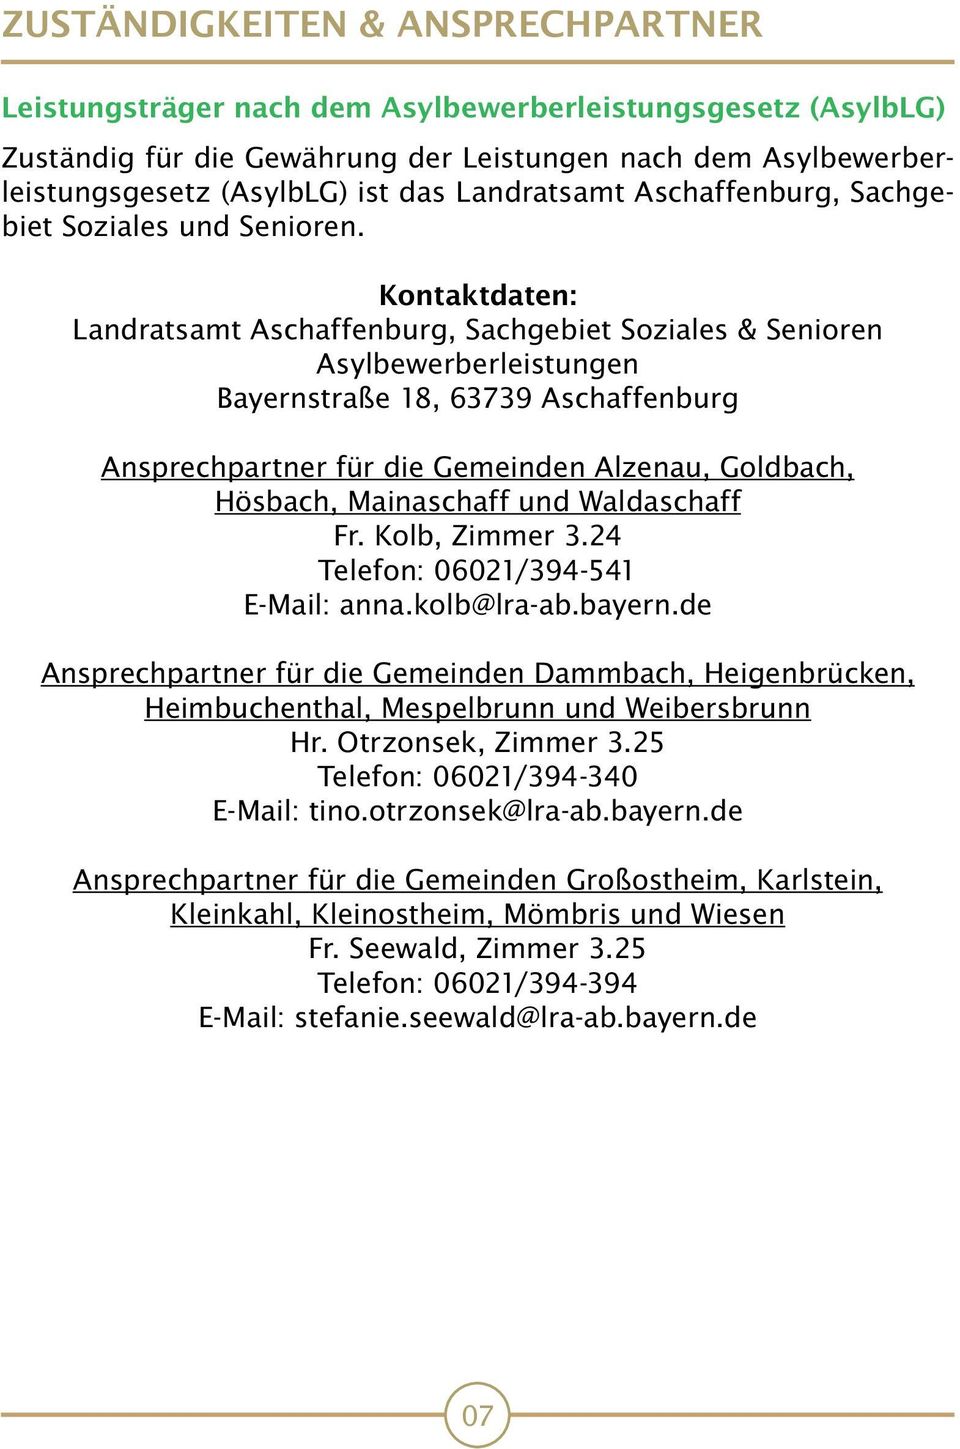 Kontaktdaten: Landratsamt Aschaffenburg, Sachgebiet Soziales & Senioren Asylbewerberleistungen Bayernstraße 18, 63739 Aschaffenburg Ansprechpartner für die Gemeinden Alzenau, Goldbach, Hösbach,